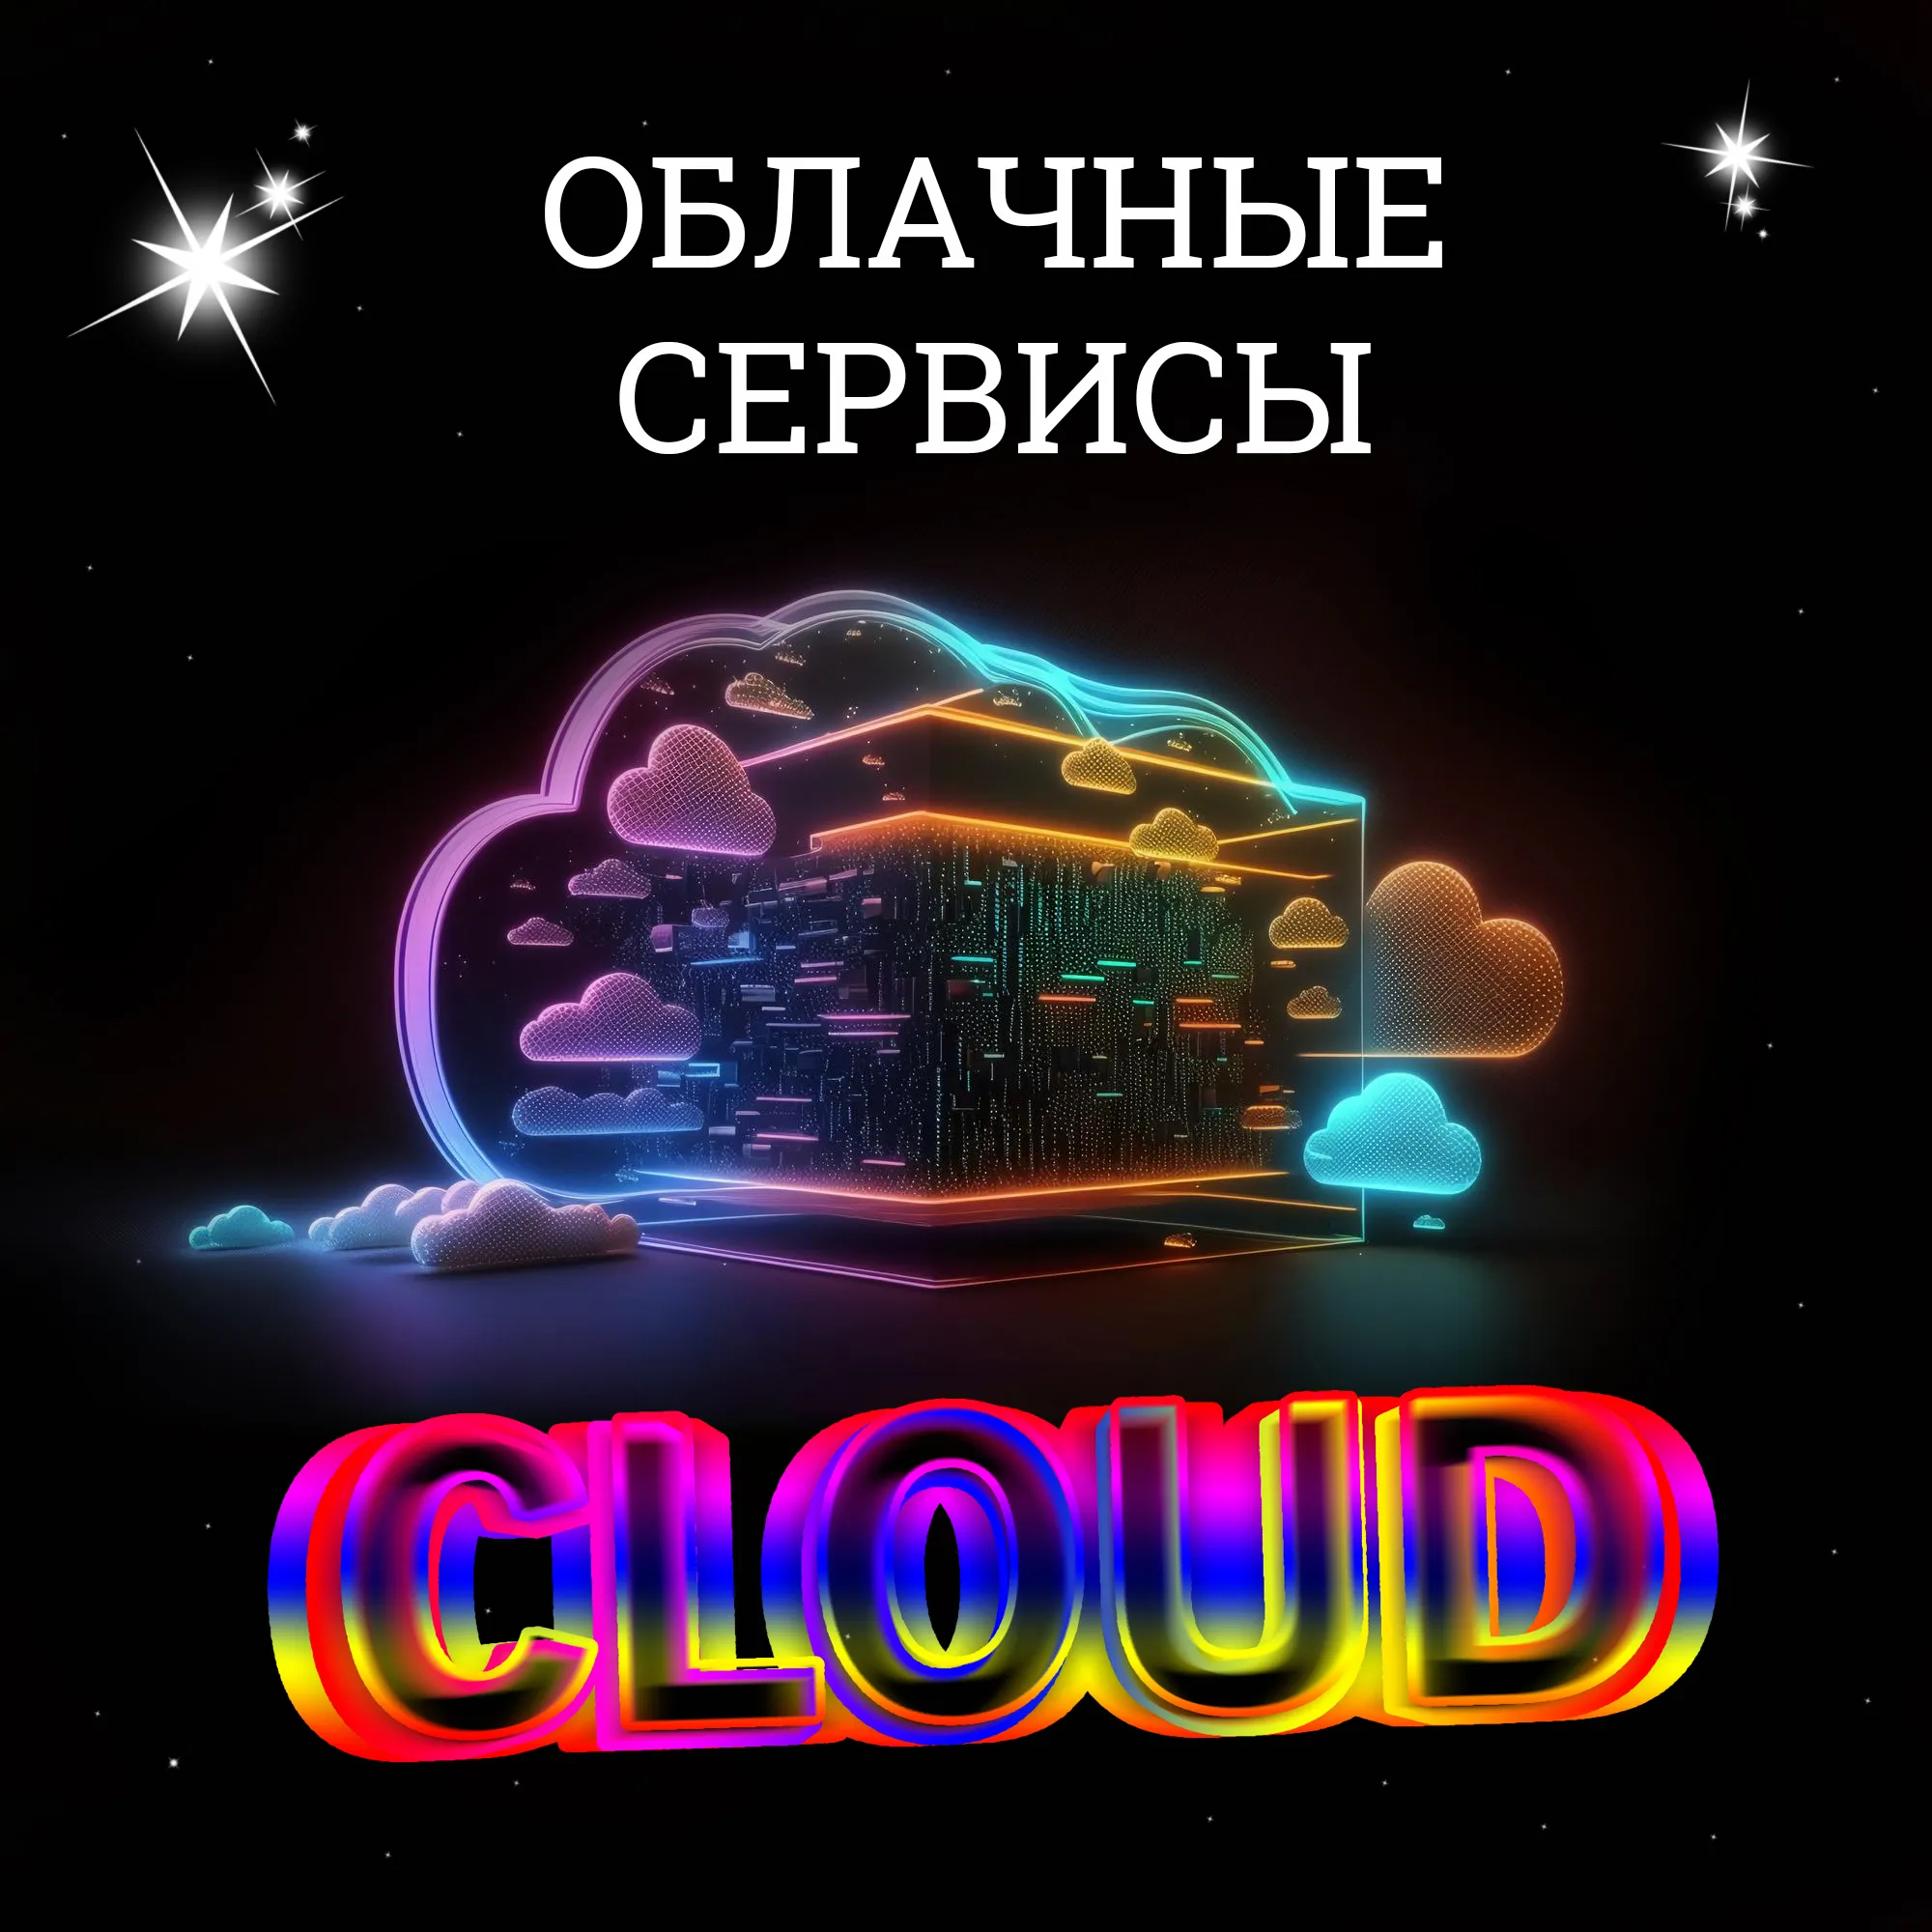 Облачные сервисы (cloud)